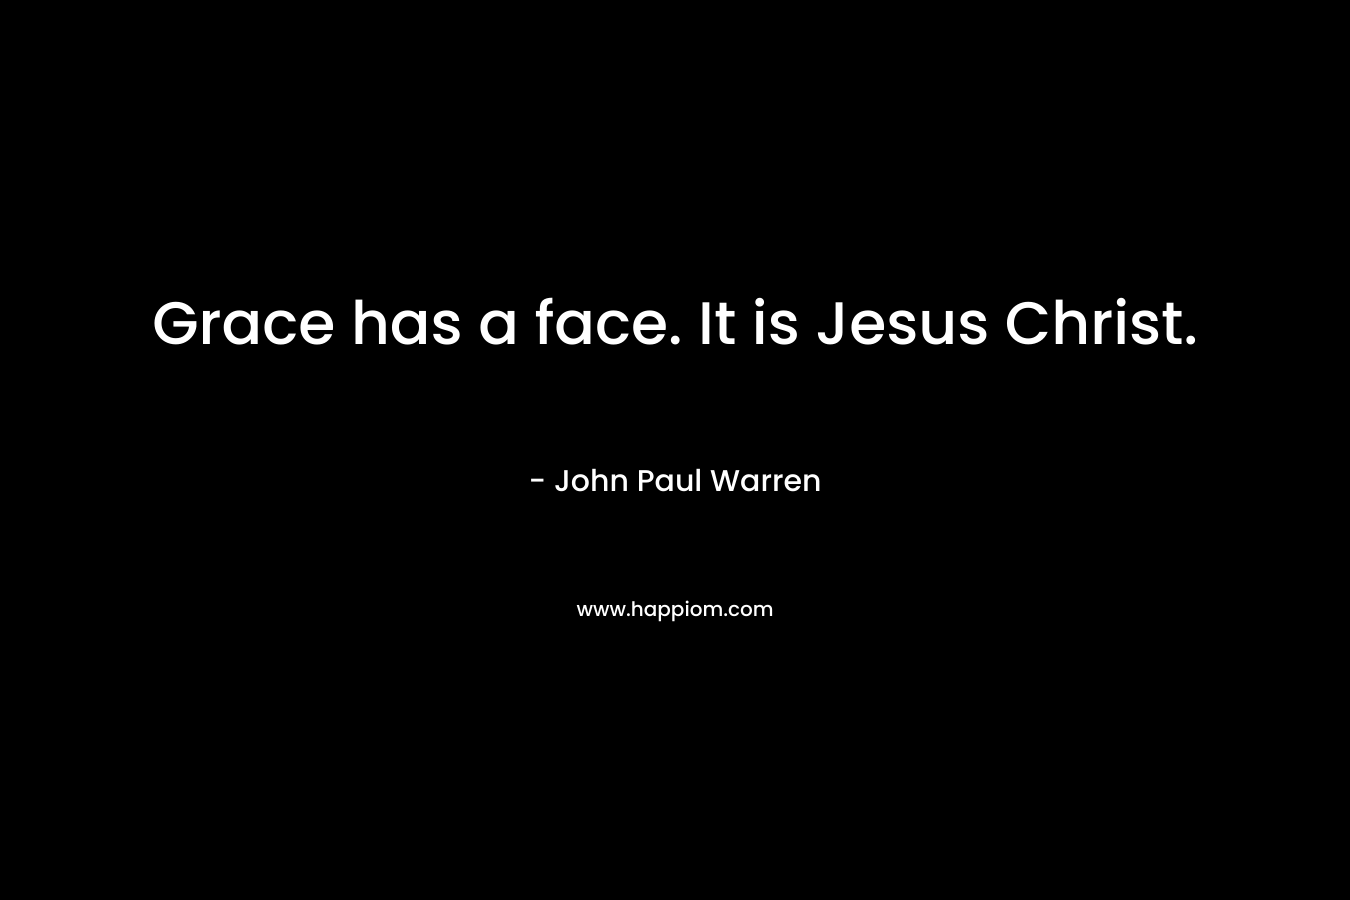 Grace has a face. It is Jesus Christ.